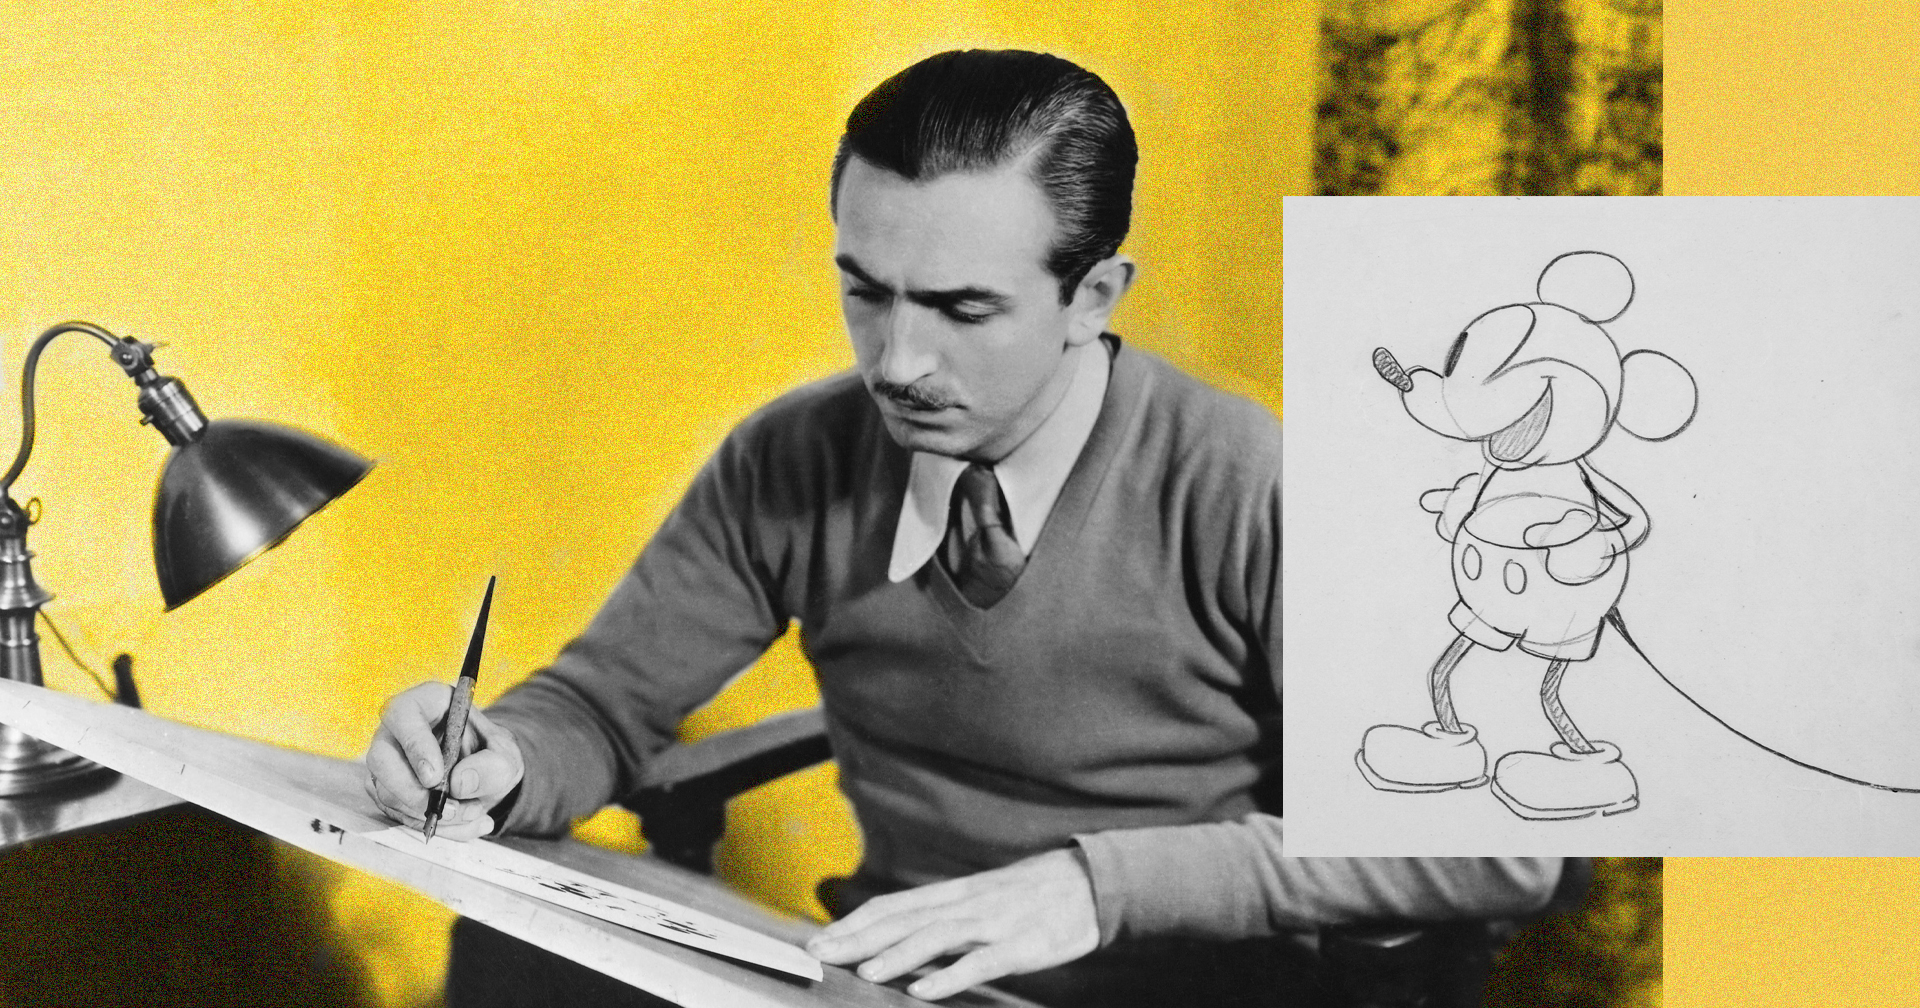 บทเรียนในวันที่ วอลต์ ดิสนีย์ สูญเสียทุกอย่าง จนกลายเป็นแรงบันดาลใจให้เกิด Mickey Mouse